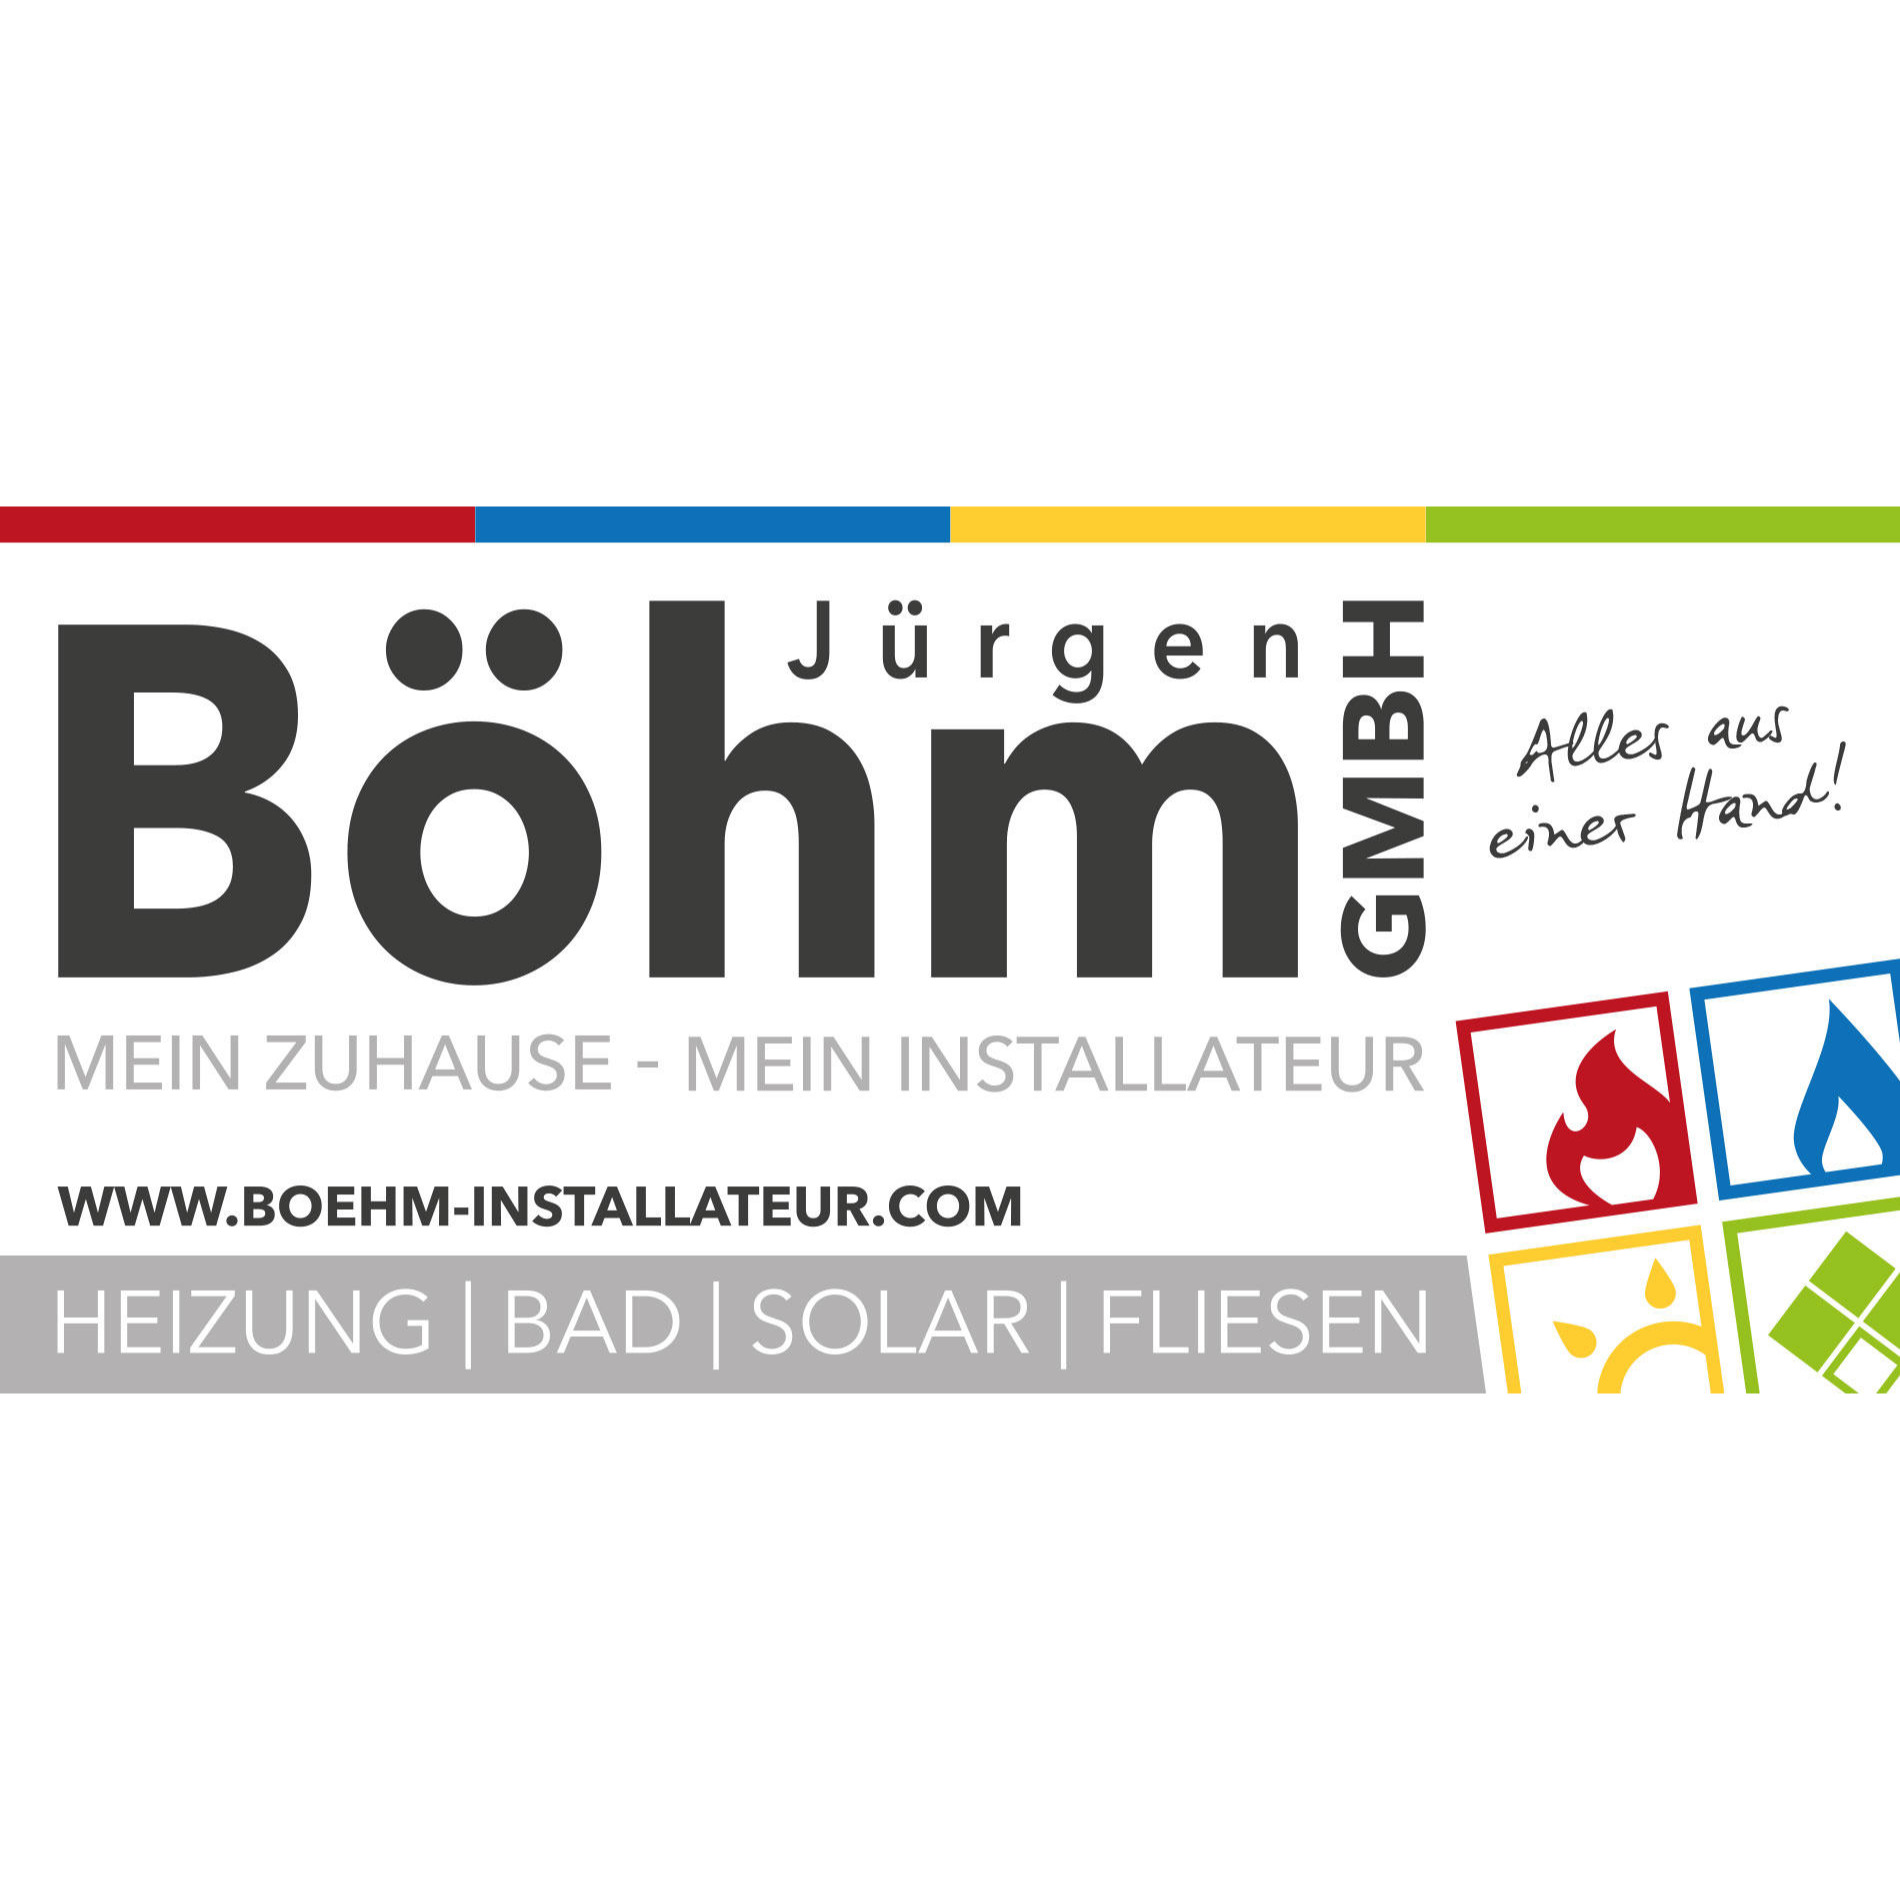 Jürgen Böhm GmbH - Mein Zuhause - Mein Installateur Logo